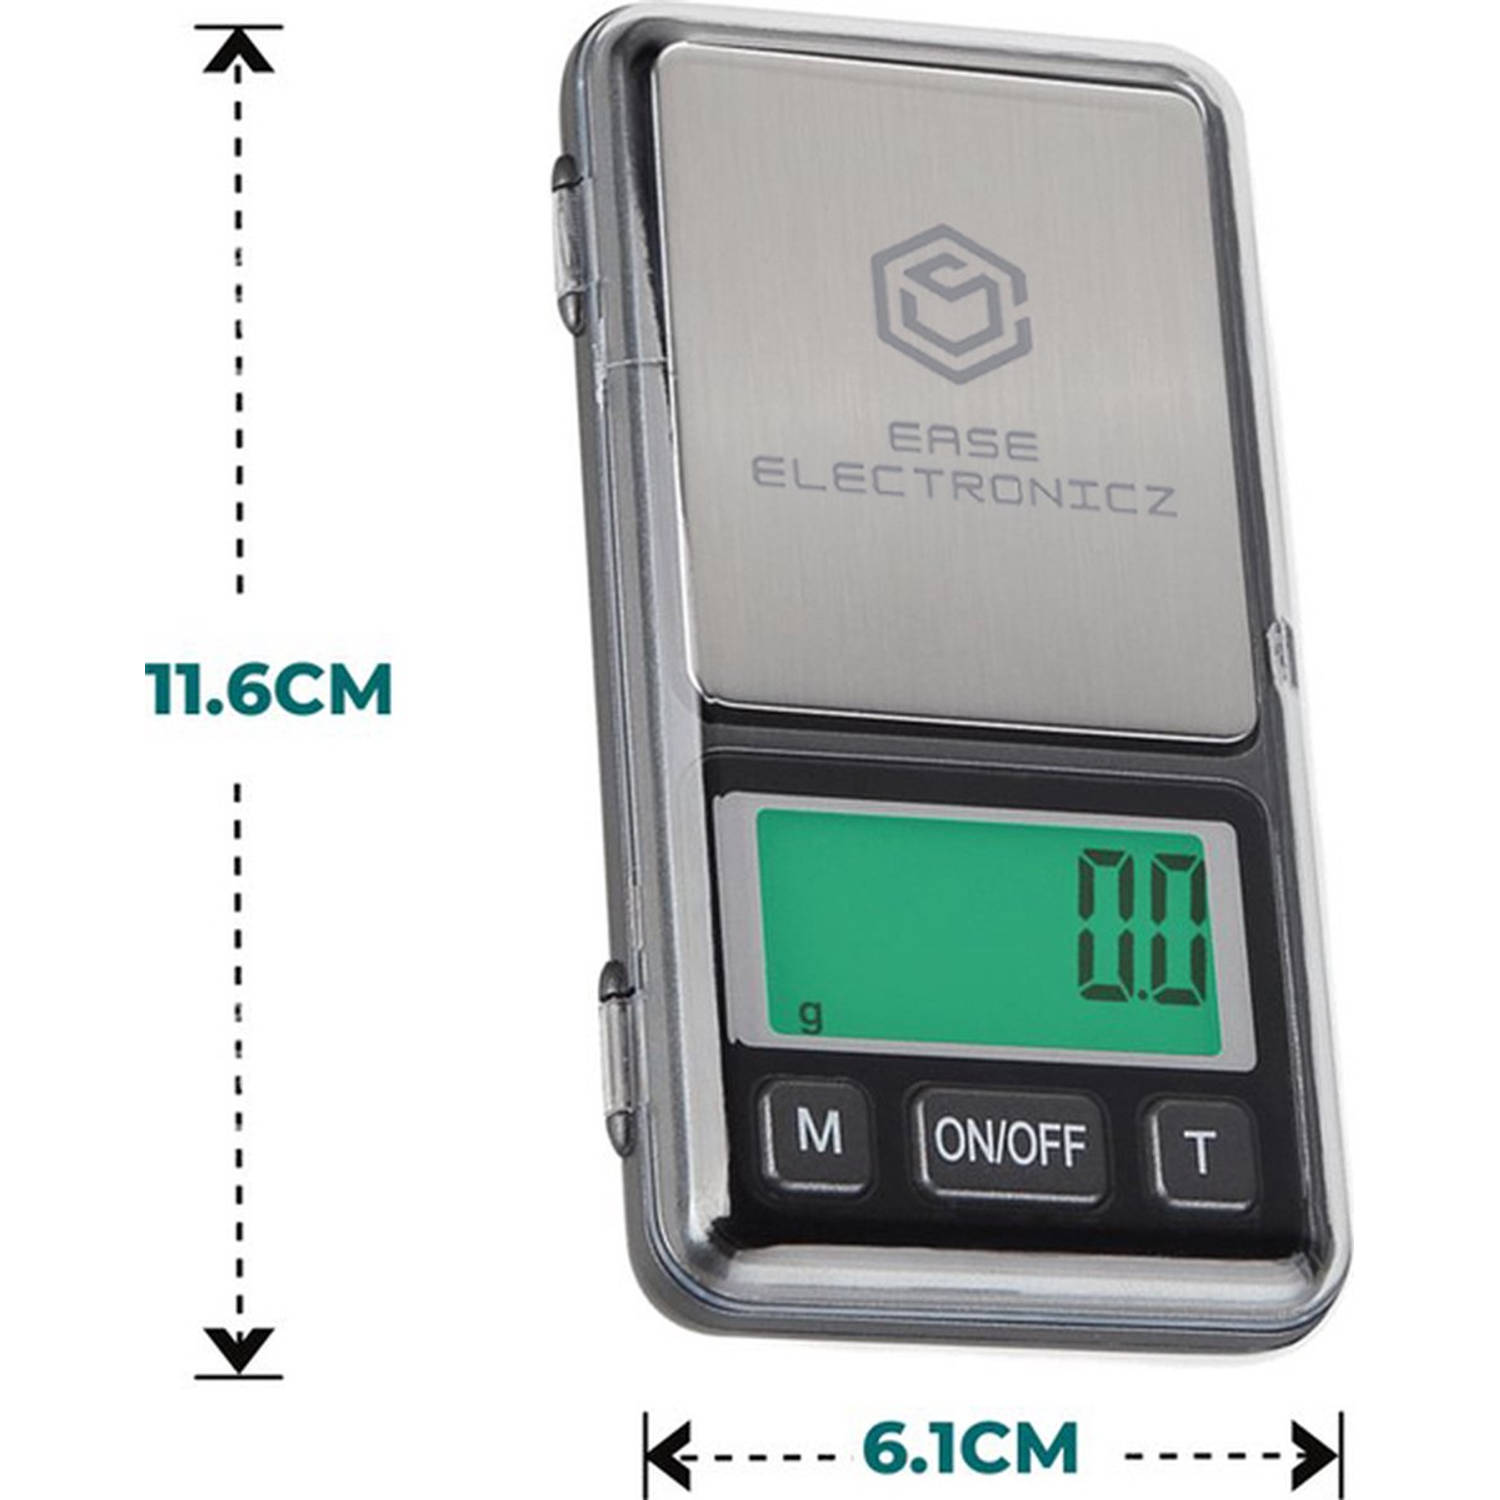 Vooraf vlotter zij is Ease Electronicz Digitale mini precisie keuken weegschaal - 0,1 tot 200  gram - 11.6 x 6.1 cm - pocket scale | Blokker